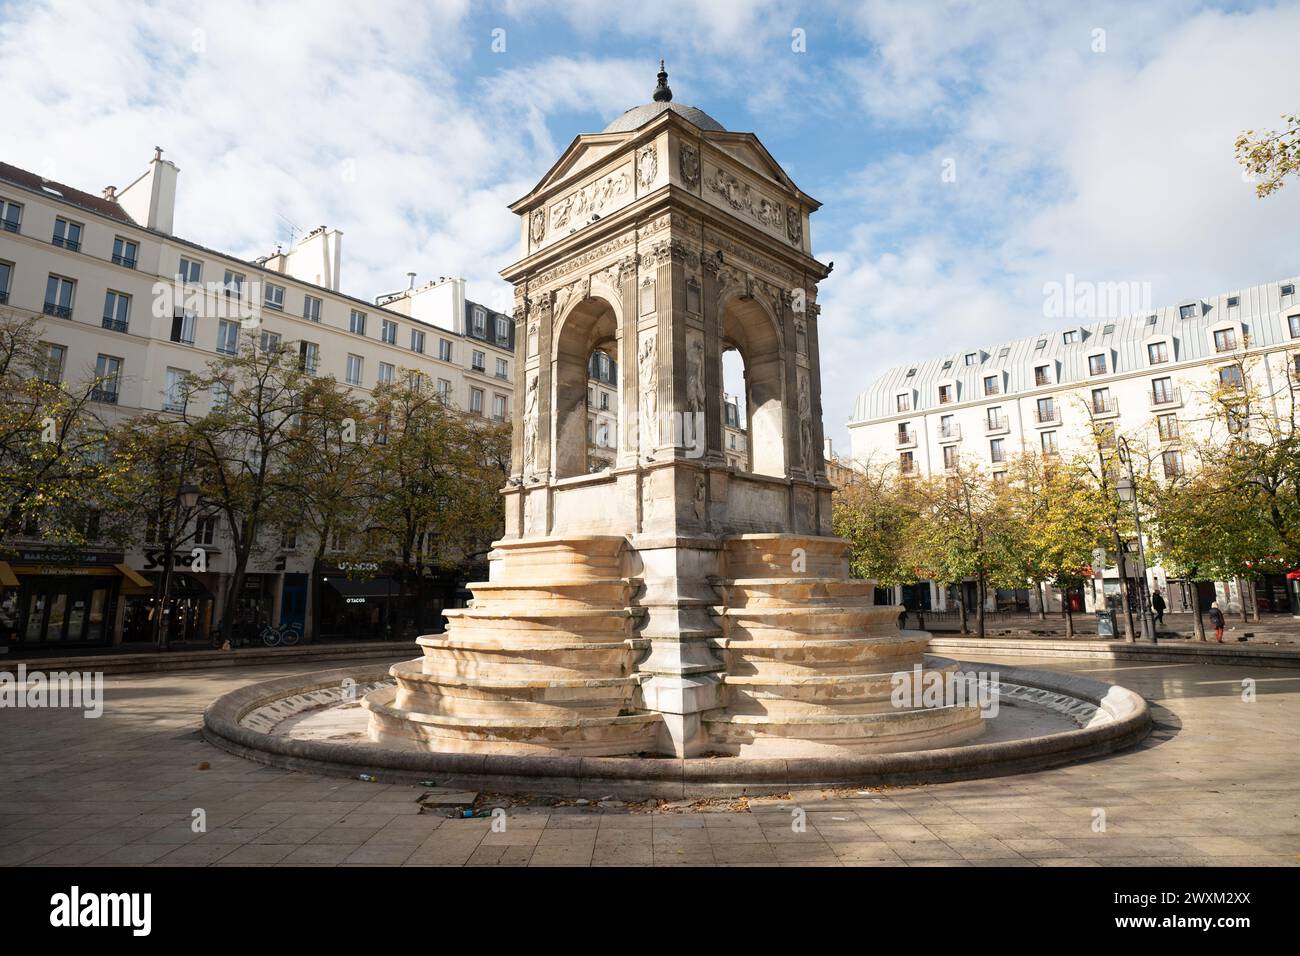 Fontaine des innocents place à Paris, France Banque D'Images